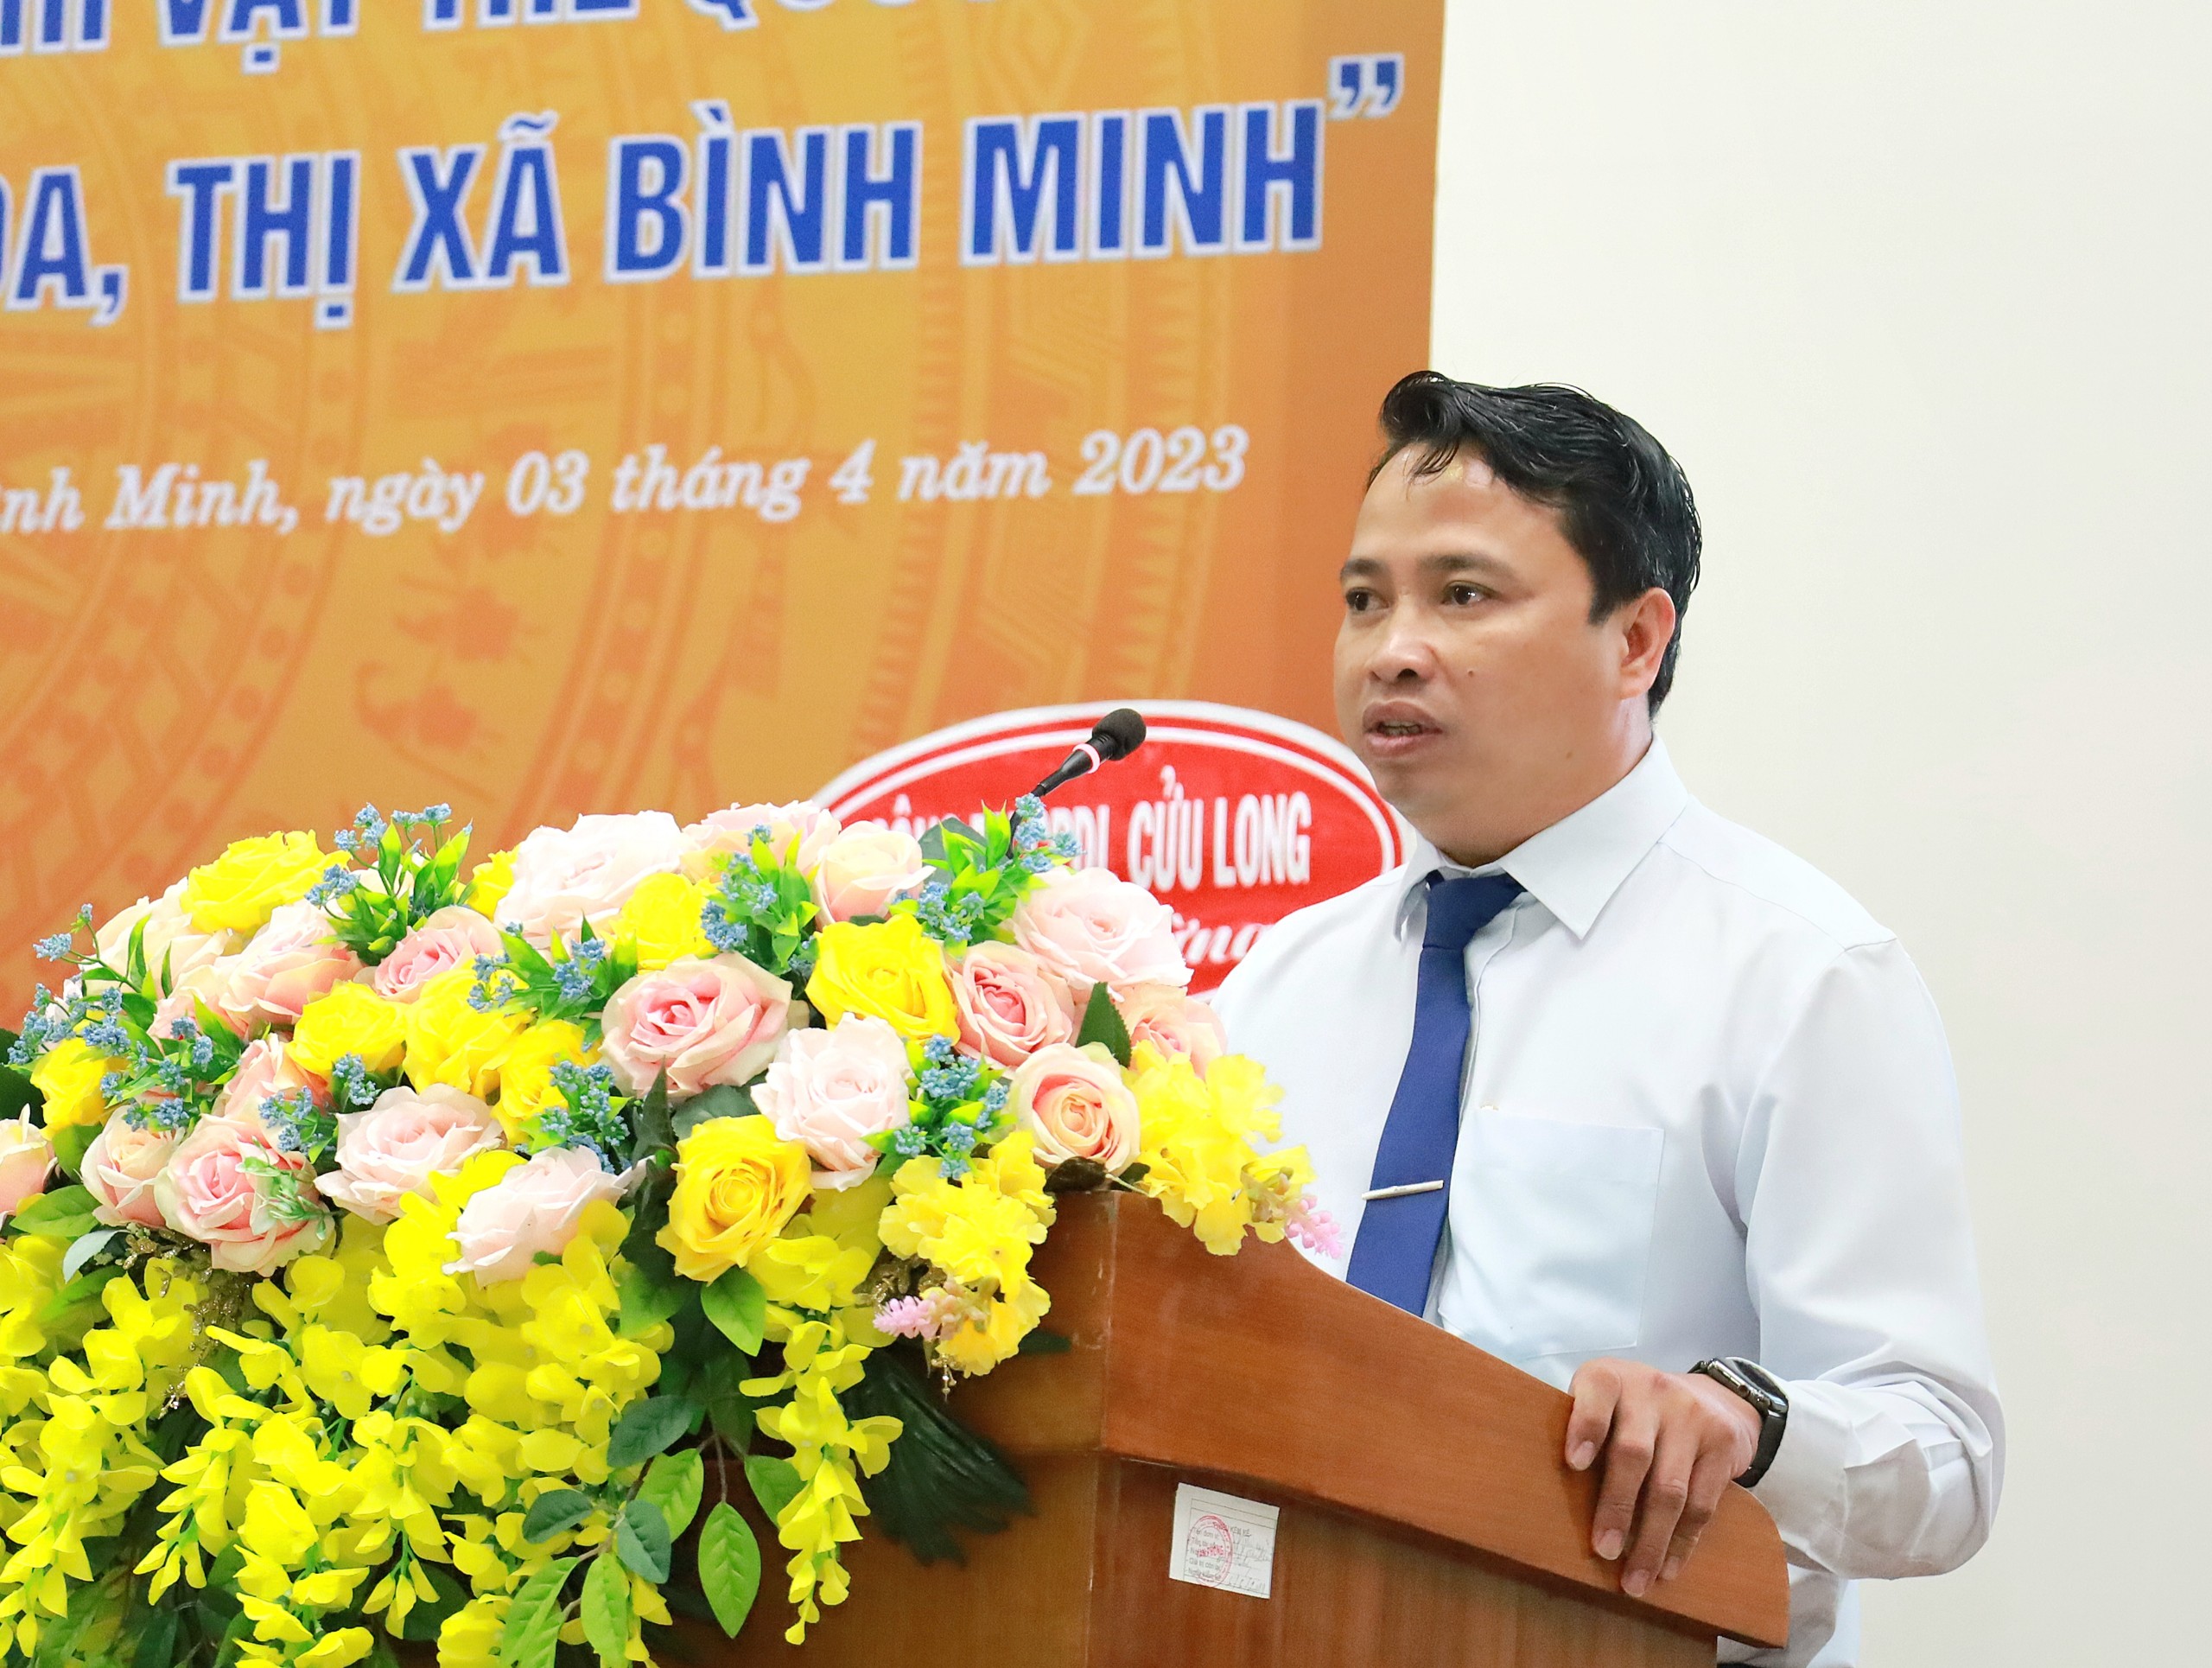 Ông Nguyễn Thanh Cần - Chủ tịch UBND thị xã Bình Minh, tỉnh Vĩnh Long phát biểu tại buổi lễ.